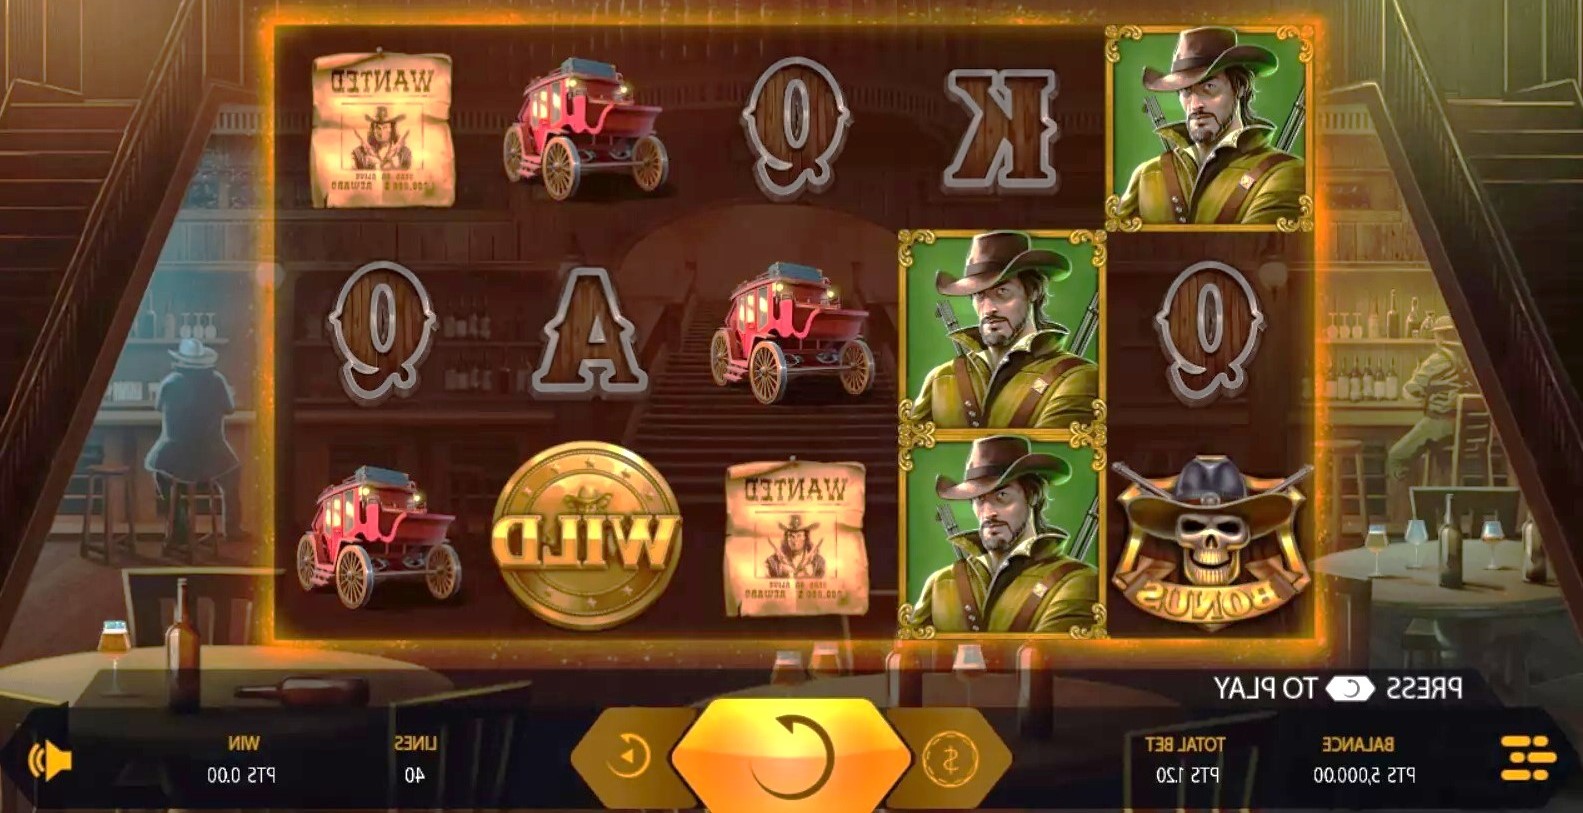 Jurus Rahasia: Strategi untuk Meraih Jackpot Besar di Game Slot Online